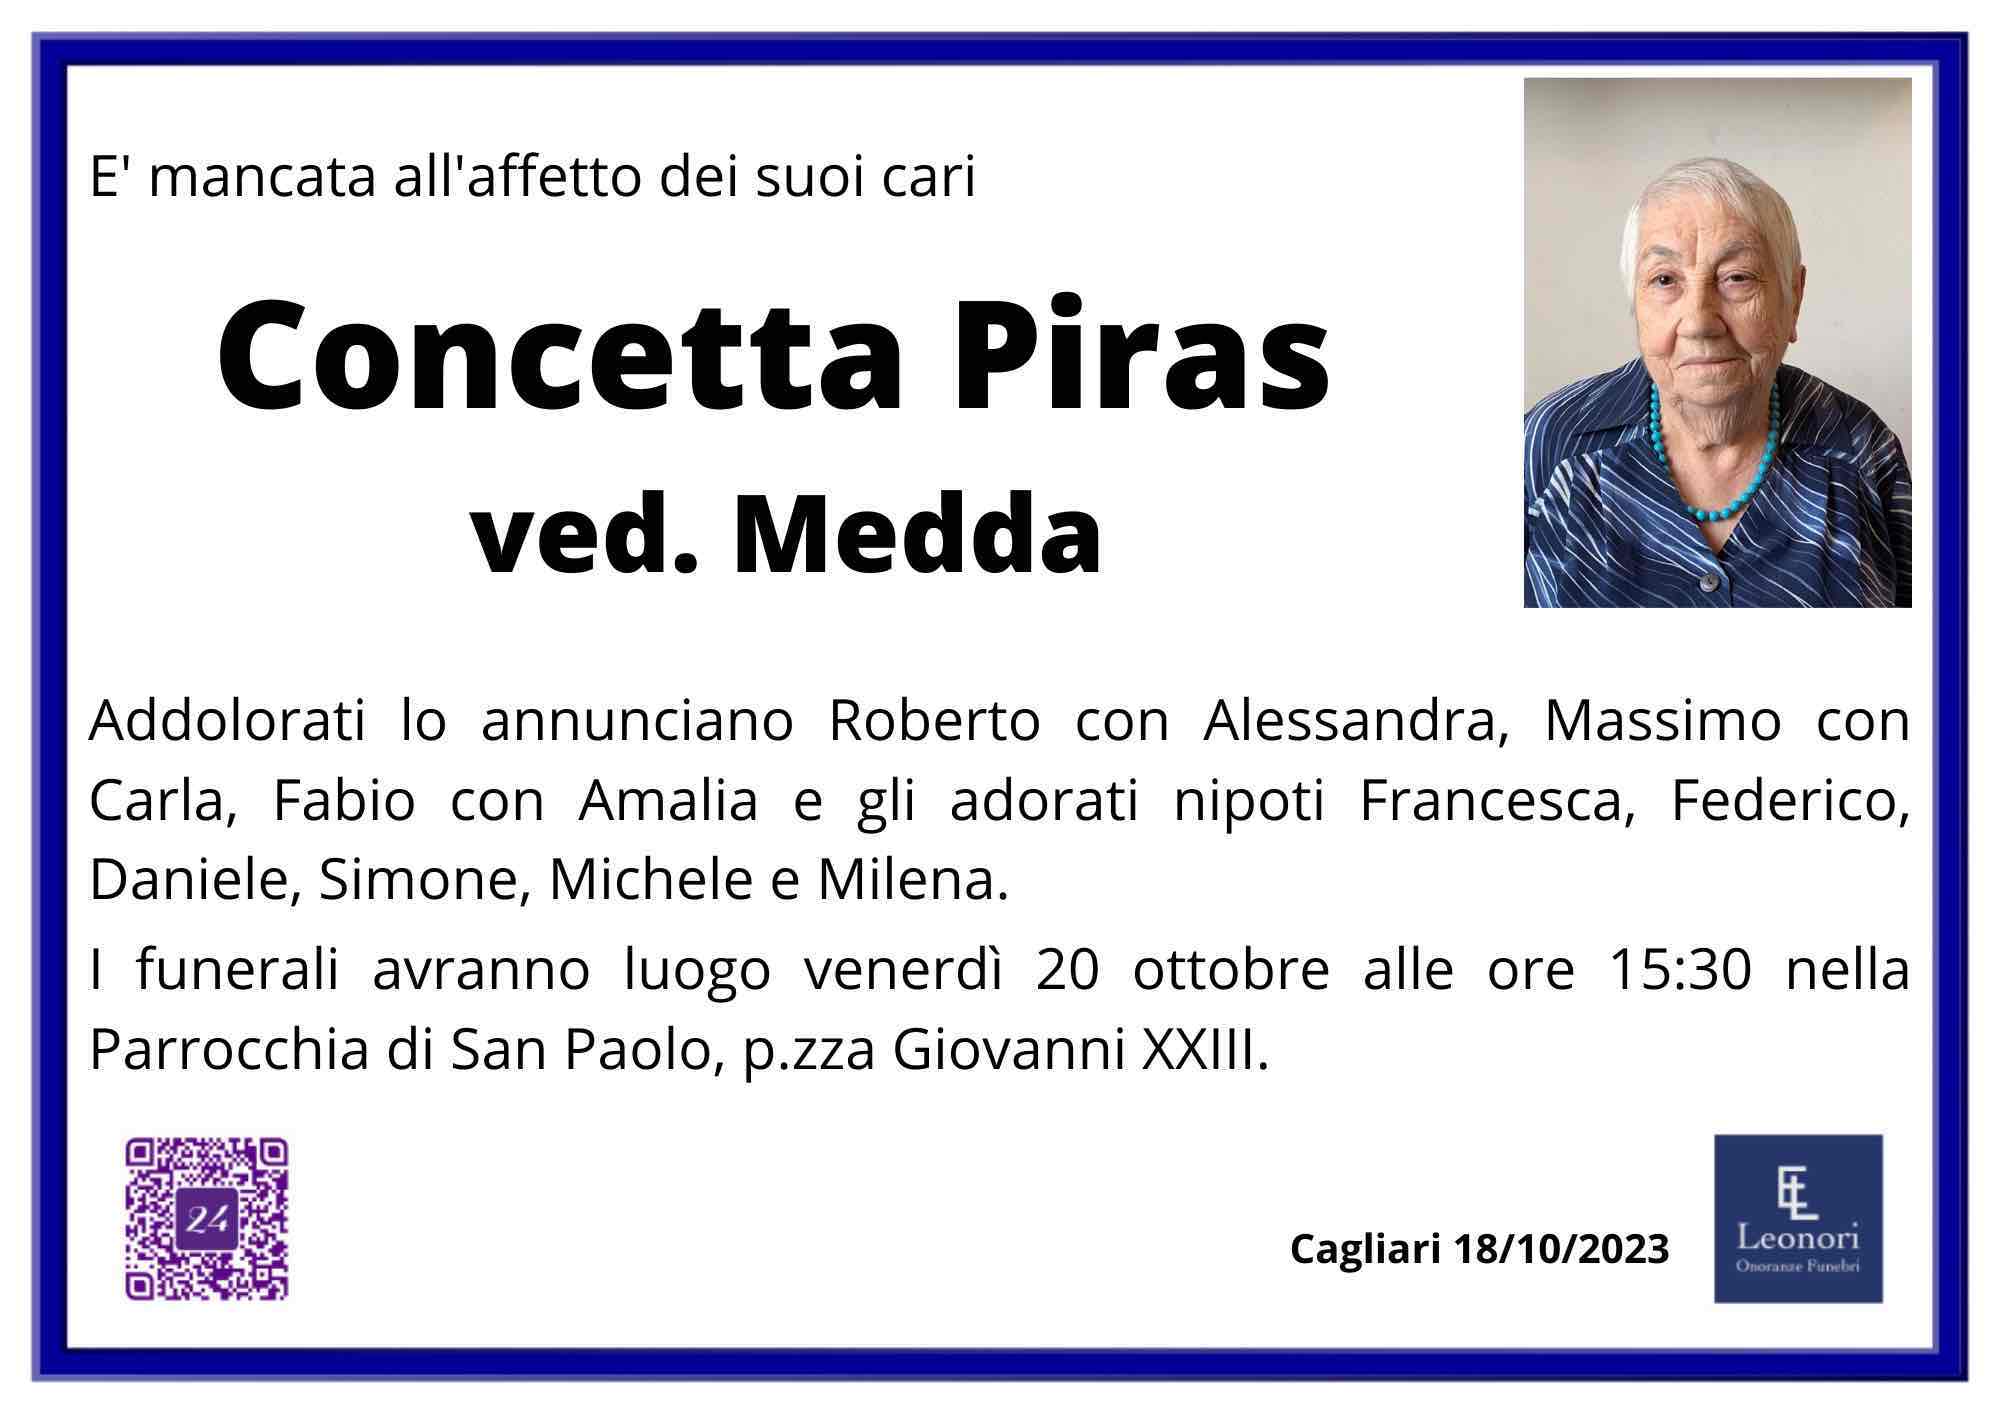 Concetta Piras